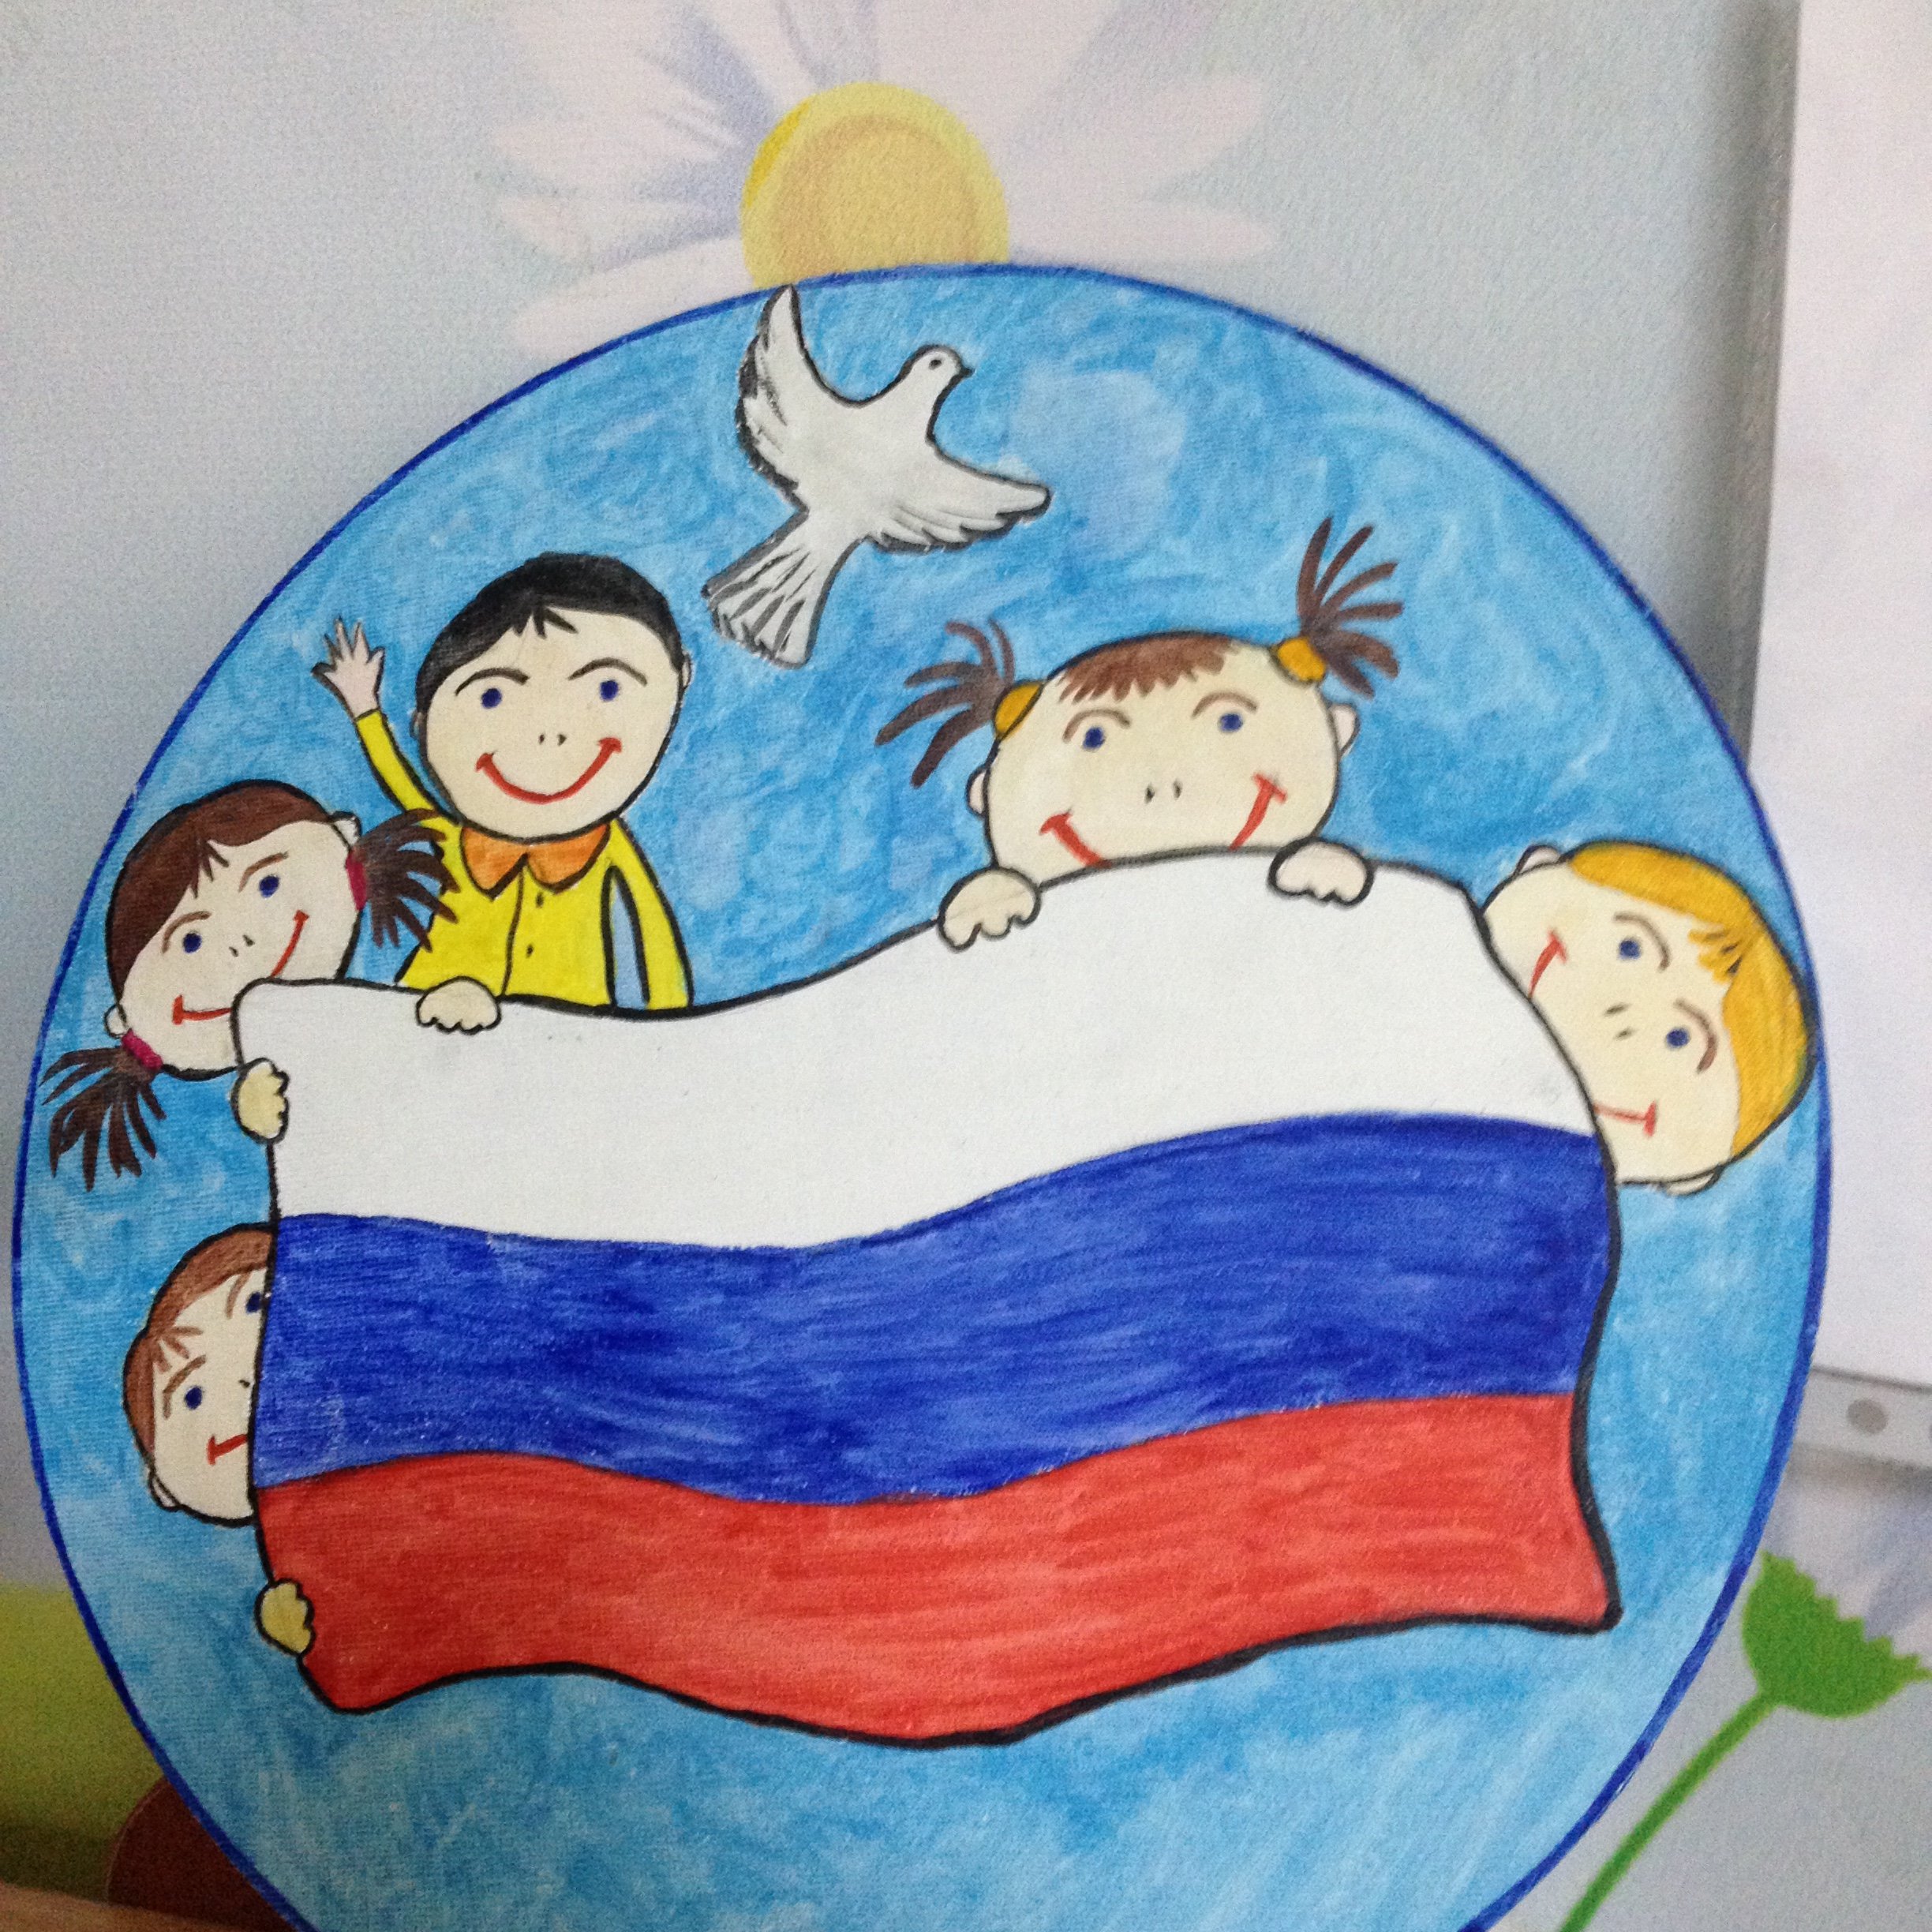 Россия рисунок для детей